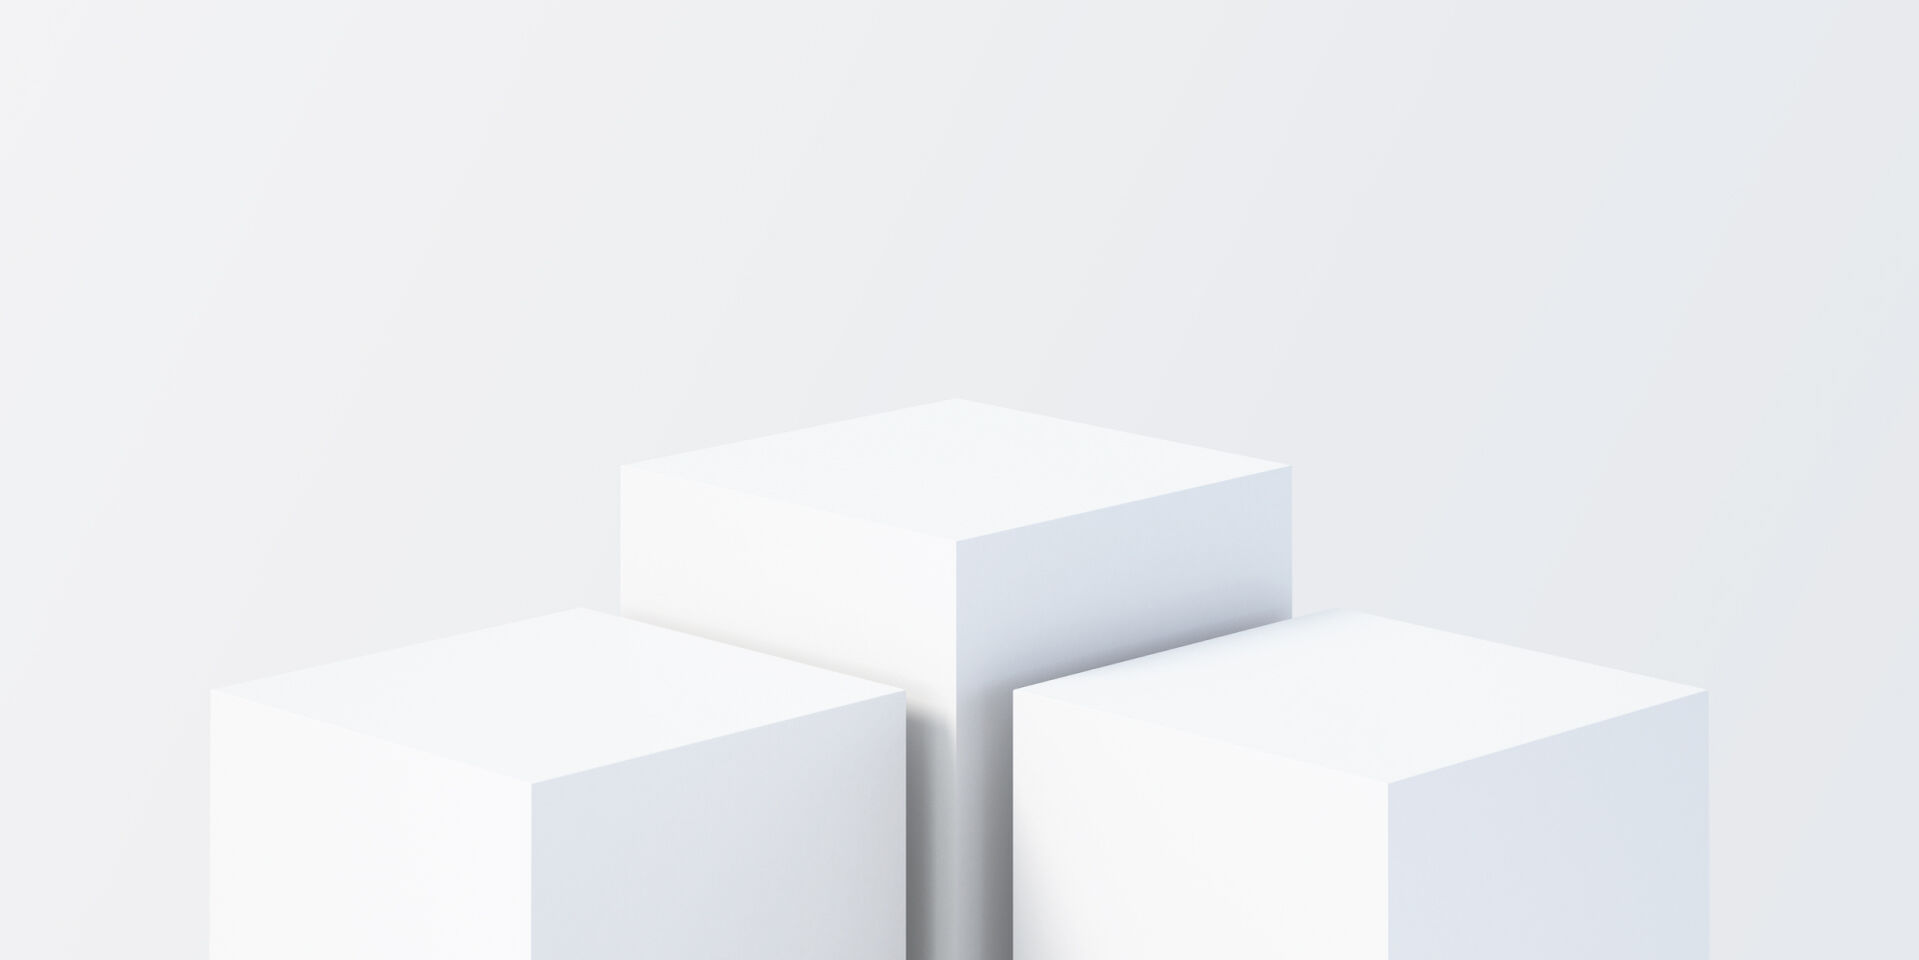 Eine abstrakte Abbildung von drei 3D-Würfeln auf einem weißen Hintergrund